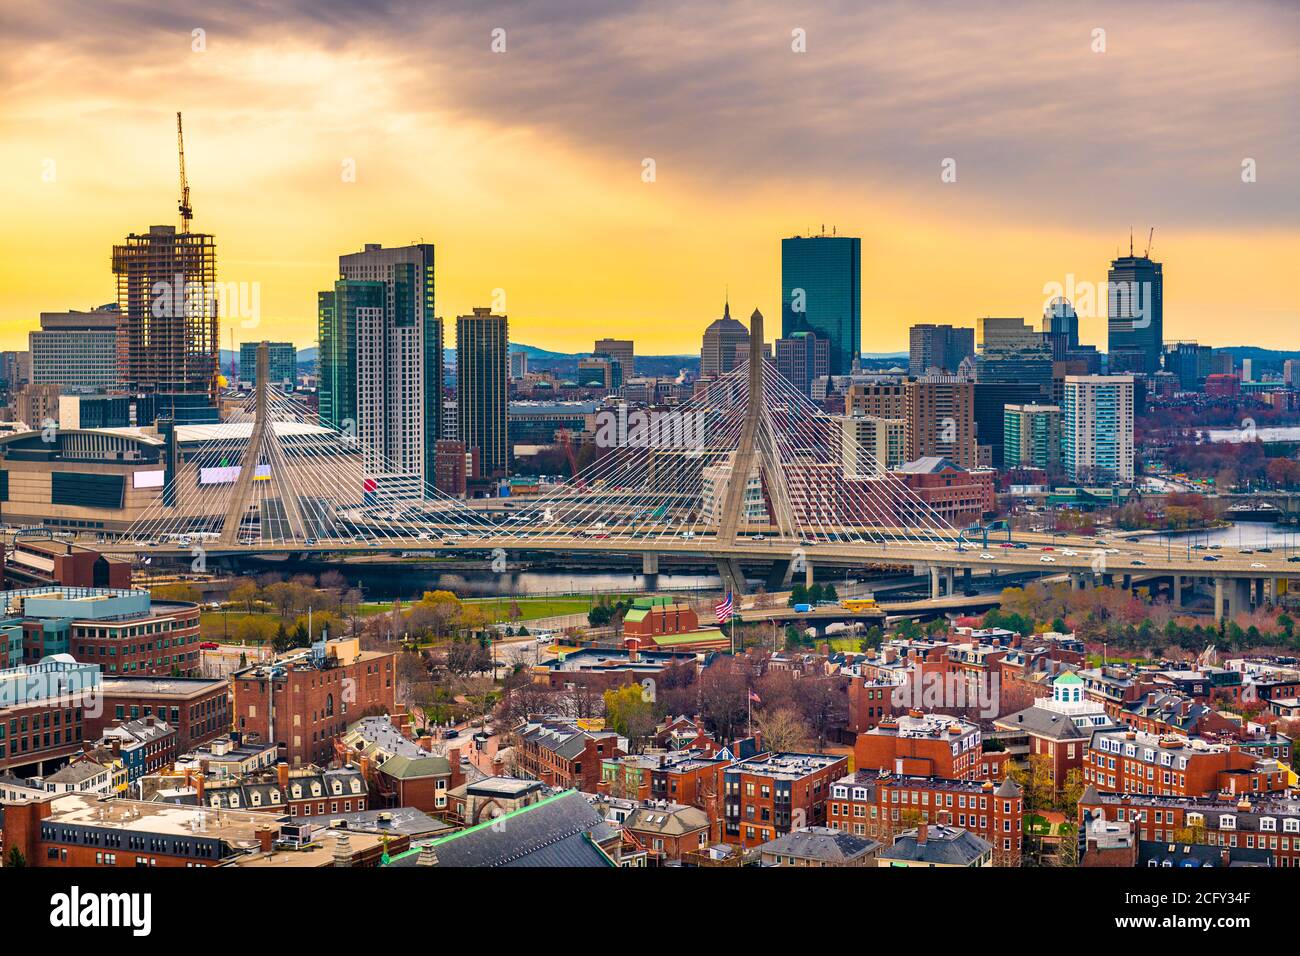 Bostom, Massachusetts, USA downtown city skyline from Bunker Hill. Stock Photo